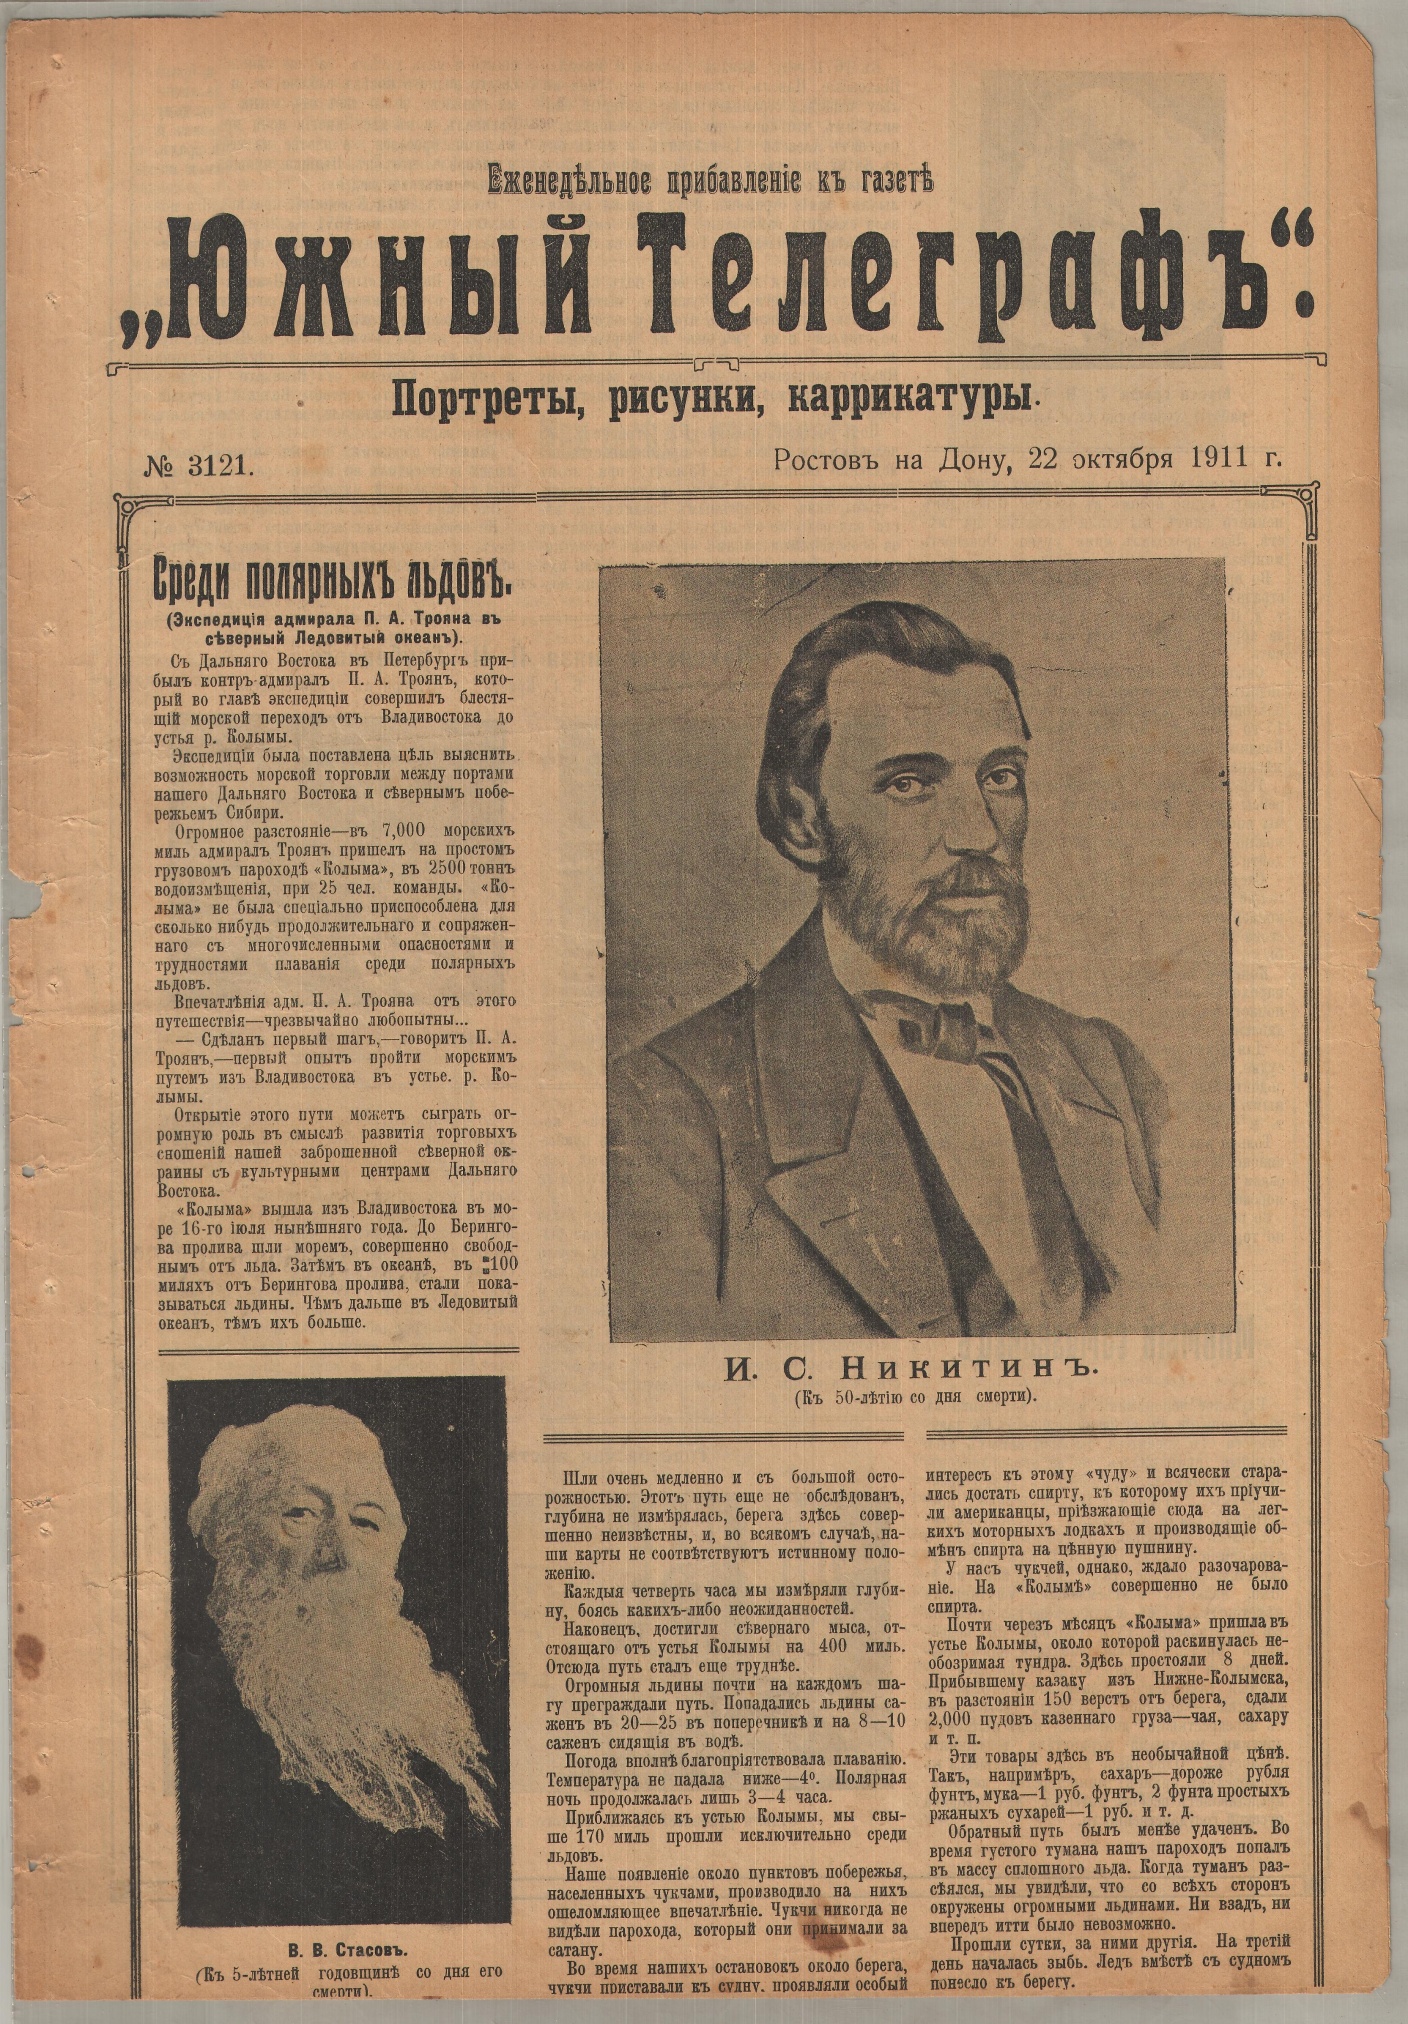 Еженедельное приложение к газете «Южный телеграф» № 3121 от 22 октября 1911 г.